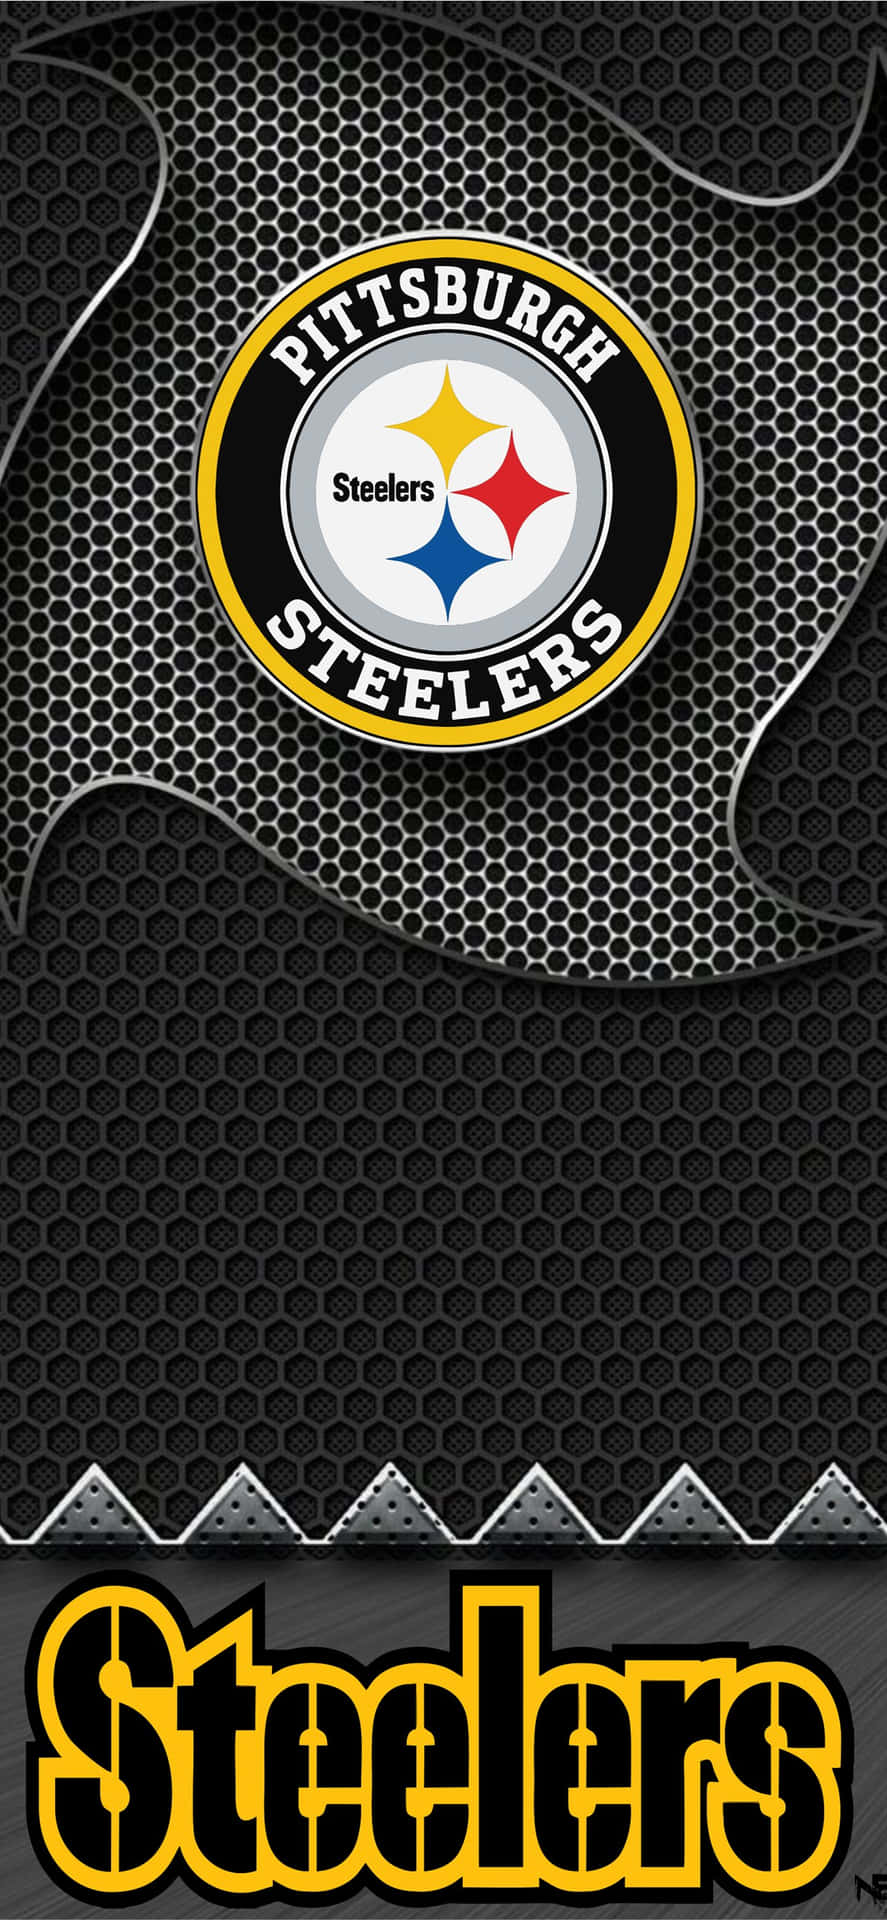 Fansde La Nfl, Regocíjense: Muestra Tu Orgullo Por Tu Equipo Con El Wallpaper De Los Steelers Para Iphone. Fondo de pantalla